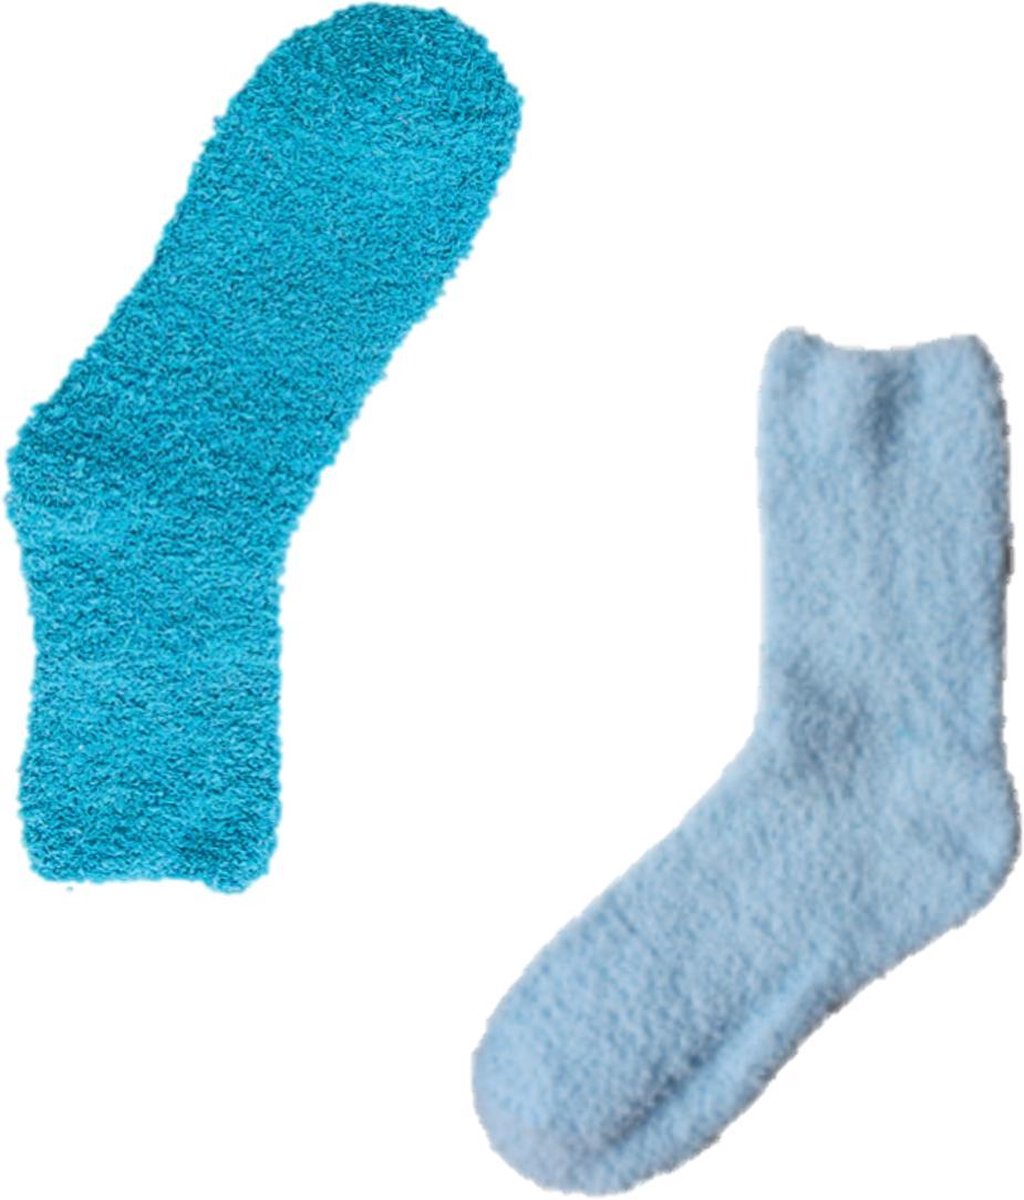 Binkie Huissokken Box | 2 paar Slofsokken |Blauwe Fluffy Socks voor Hem en Haar| Maat 37-42